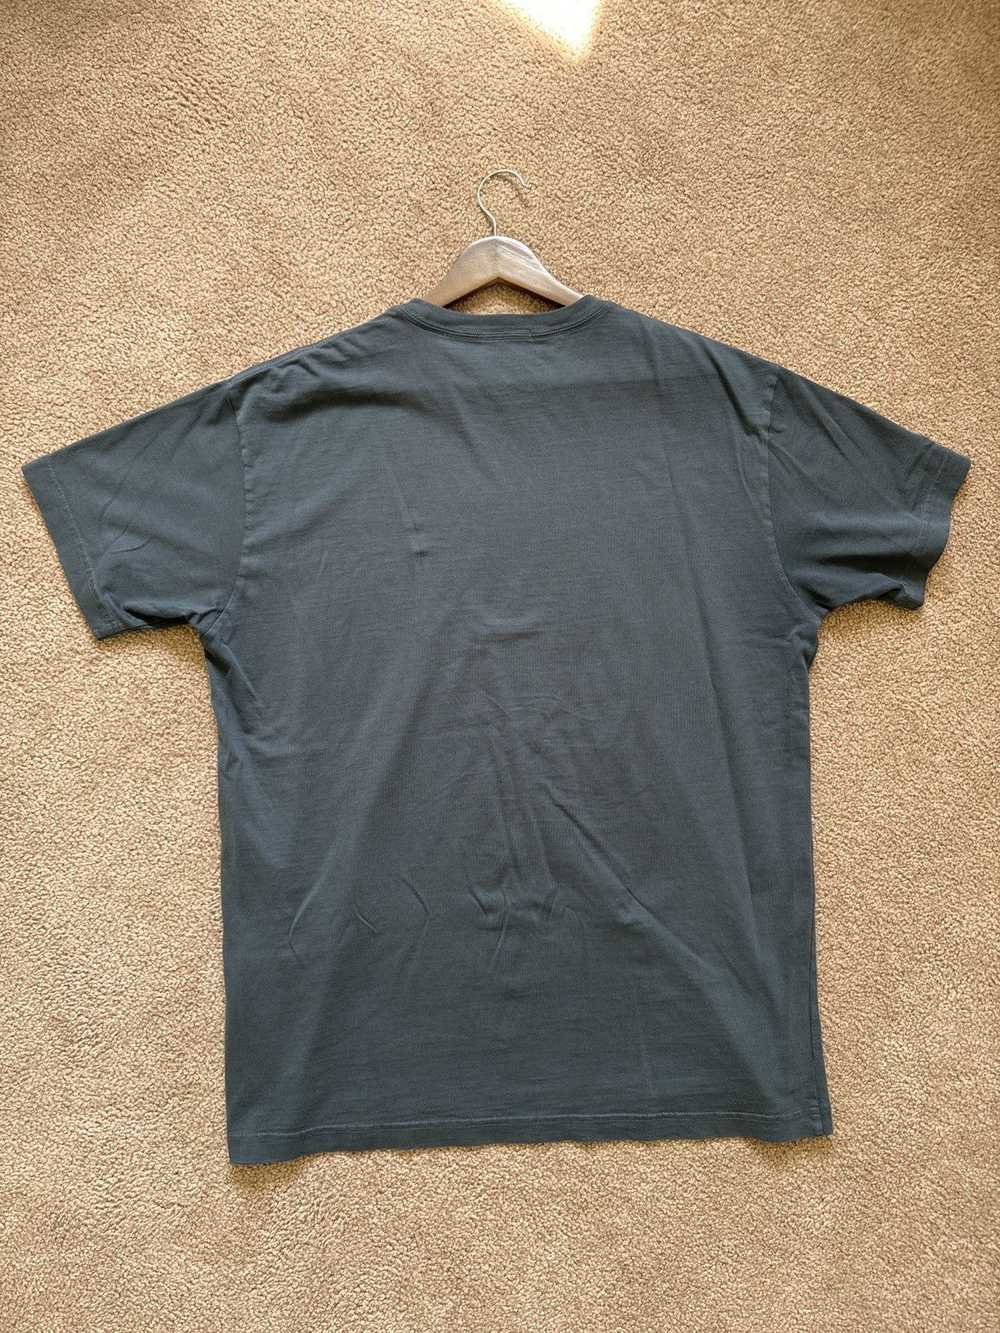 Columbia × Kith Kith x Columbia PFG Shirt - image 2